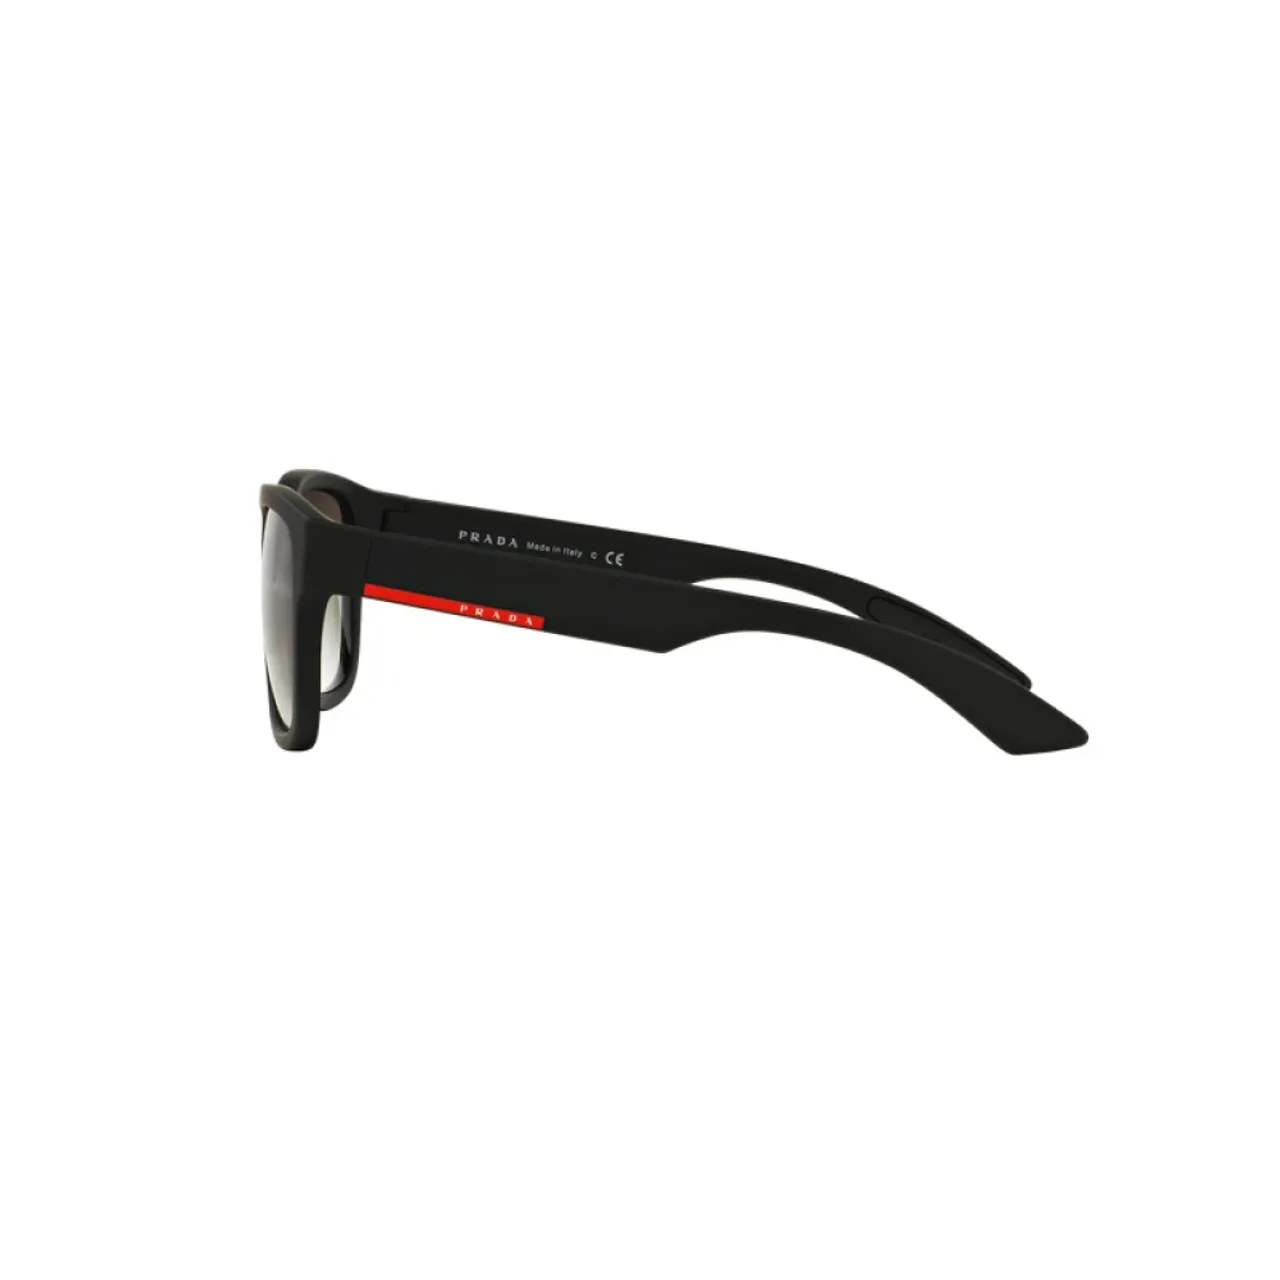 Stylische Sonnenbrille für Männer - Red Line PS 03Qs Prada